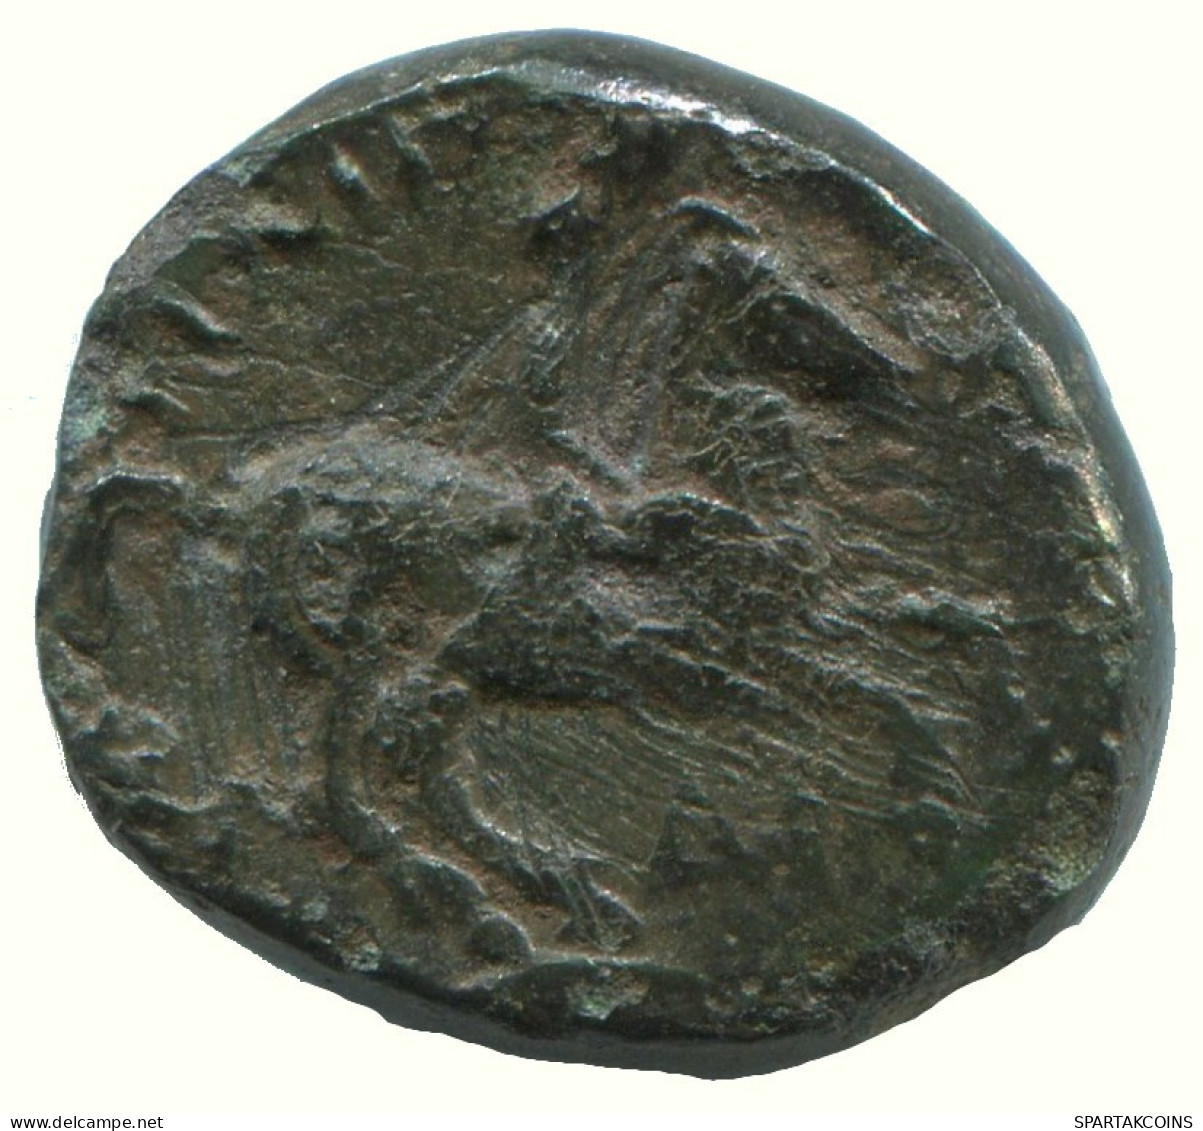 MACEDONIAN KINGDOM PHILIP II 359-336 BC APOLLO HORSEMAN 5.2g/17mm GRIECHISCHE Münze #AA019.58.D.A - Griechische Münzen